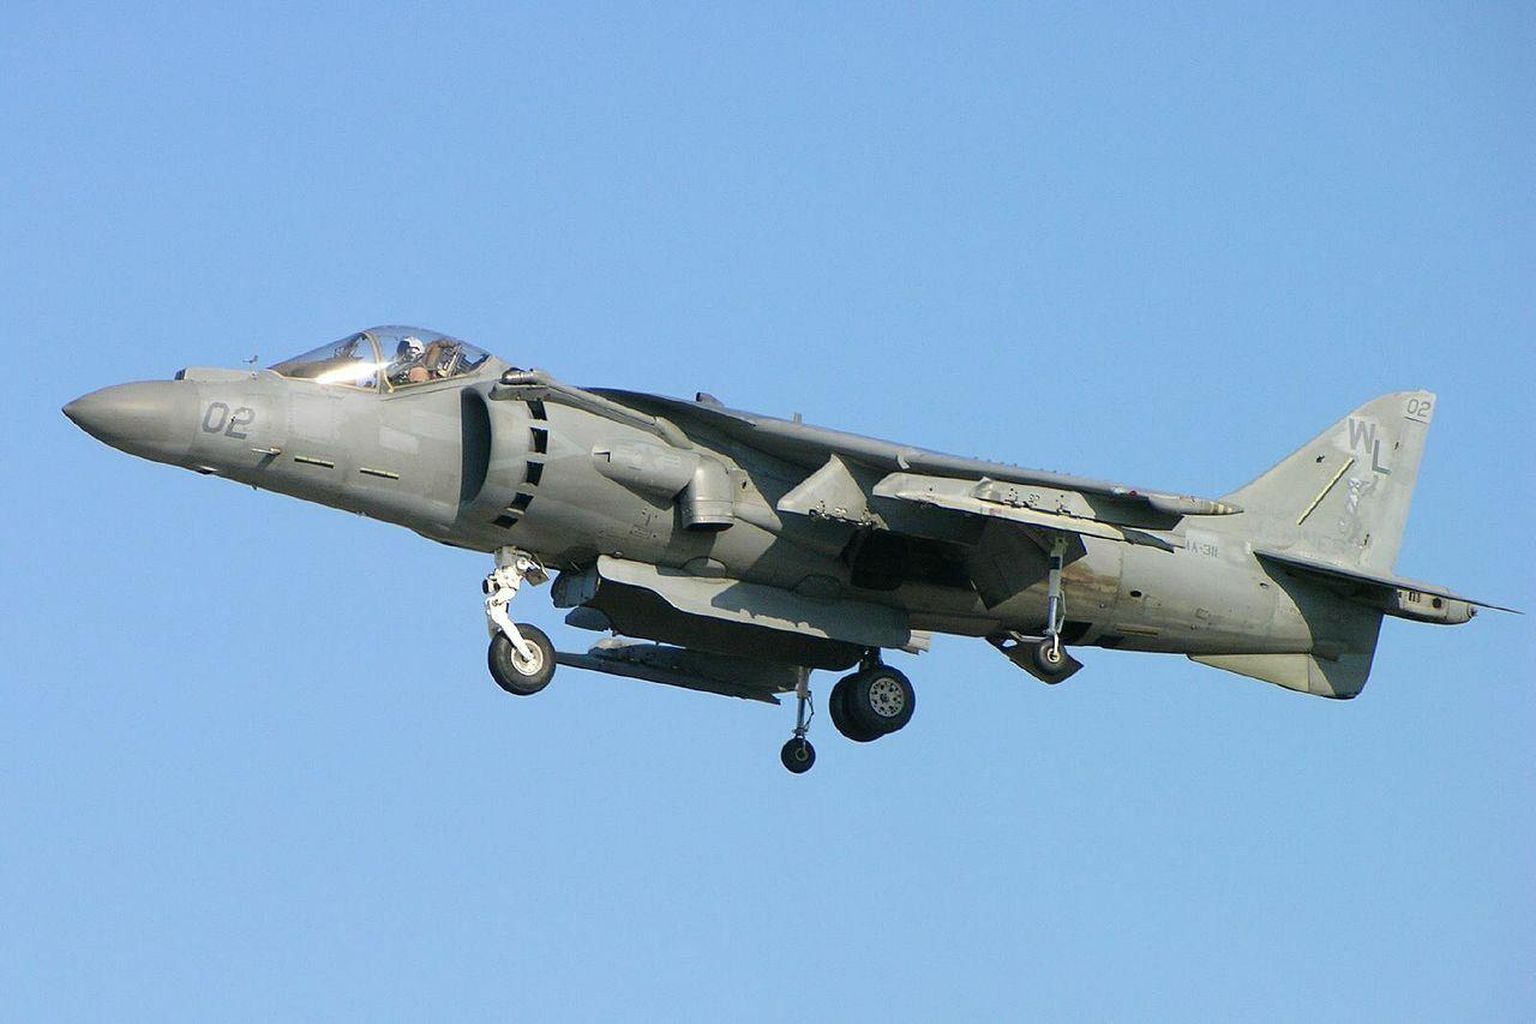 AV-8B Harrier II.